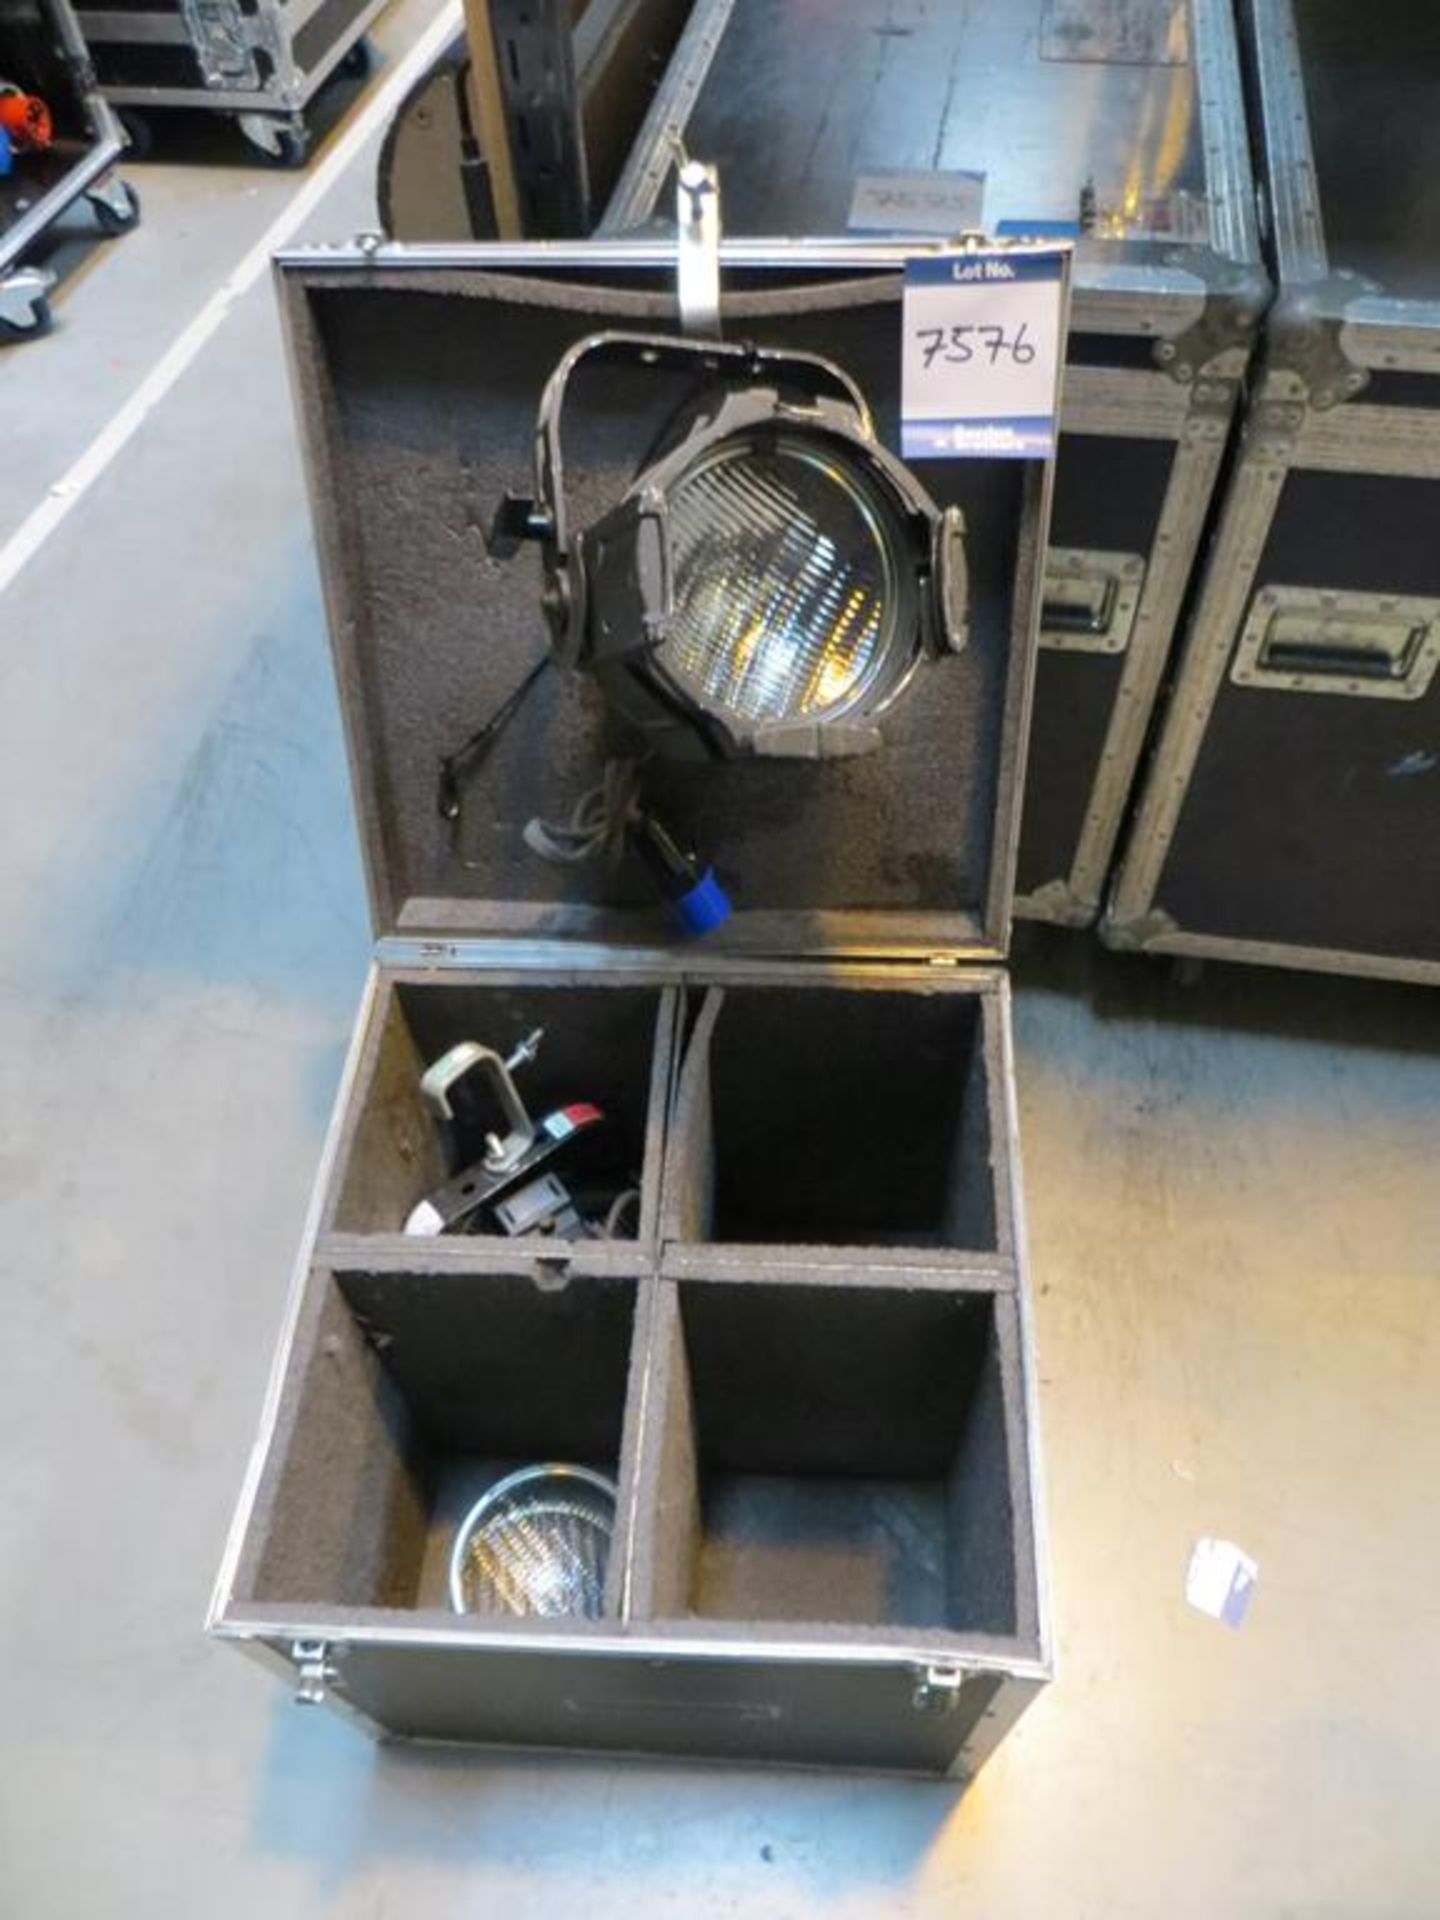 2x No. ETC, Source 4 par lamps with interchangeable lenses in transit case: Unit C Moorside, 40 Dava